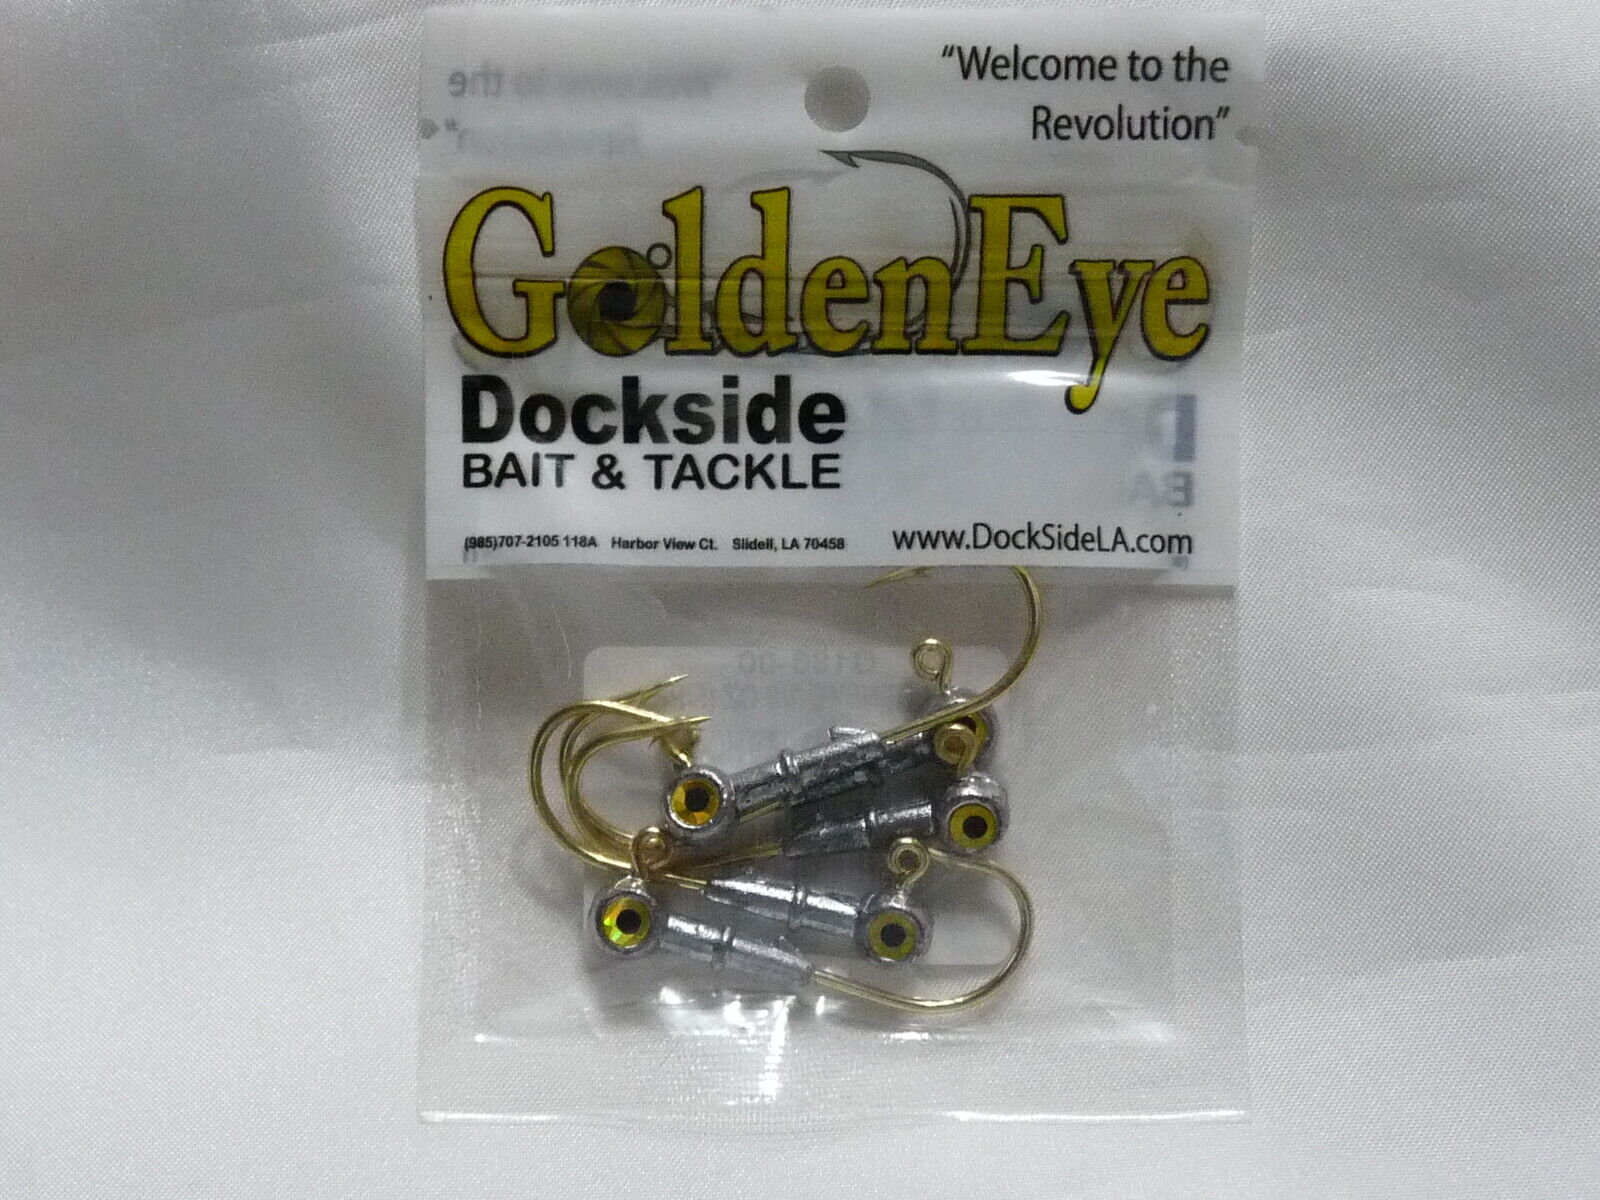 Golden Eye Dockside Bait and Tackle